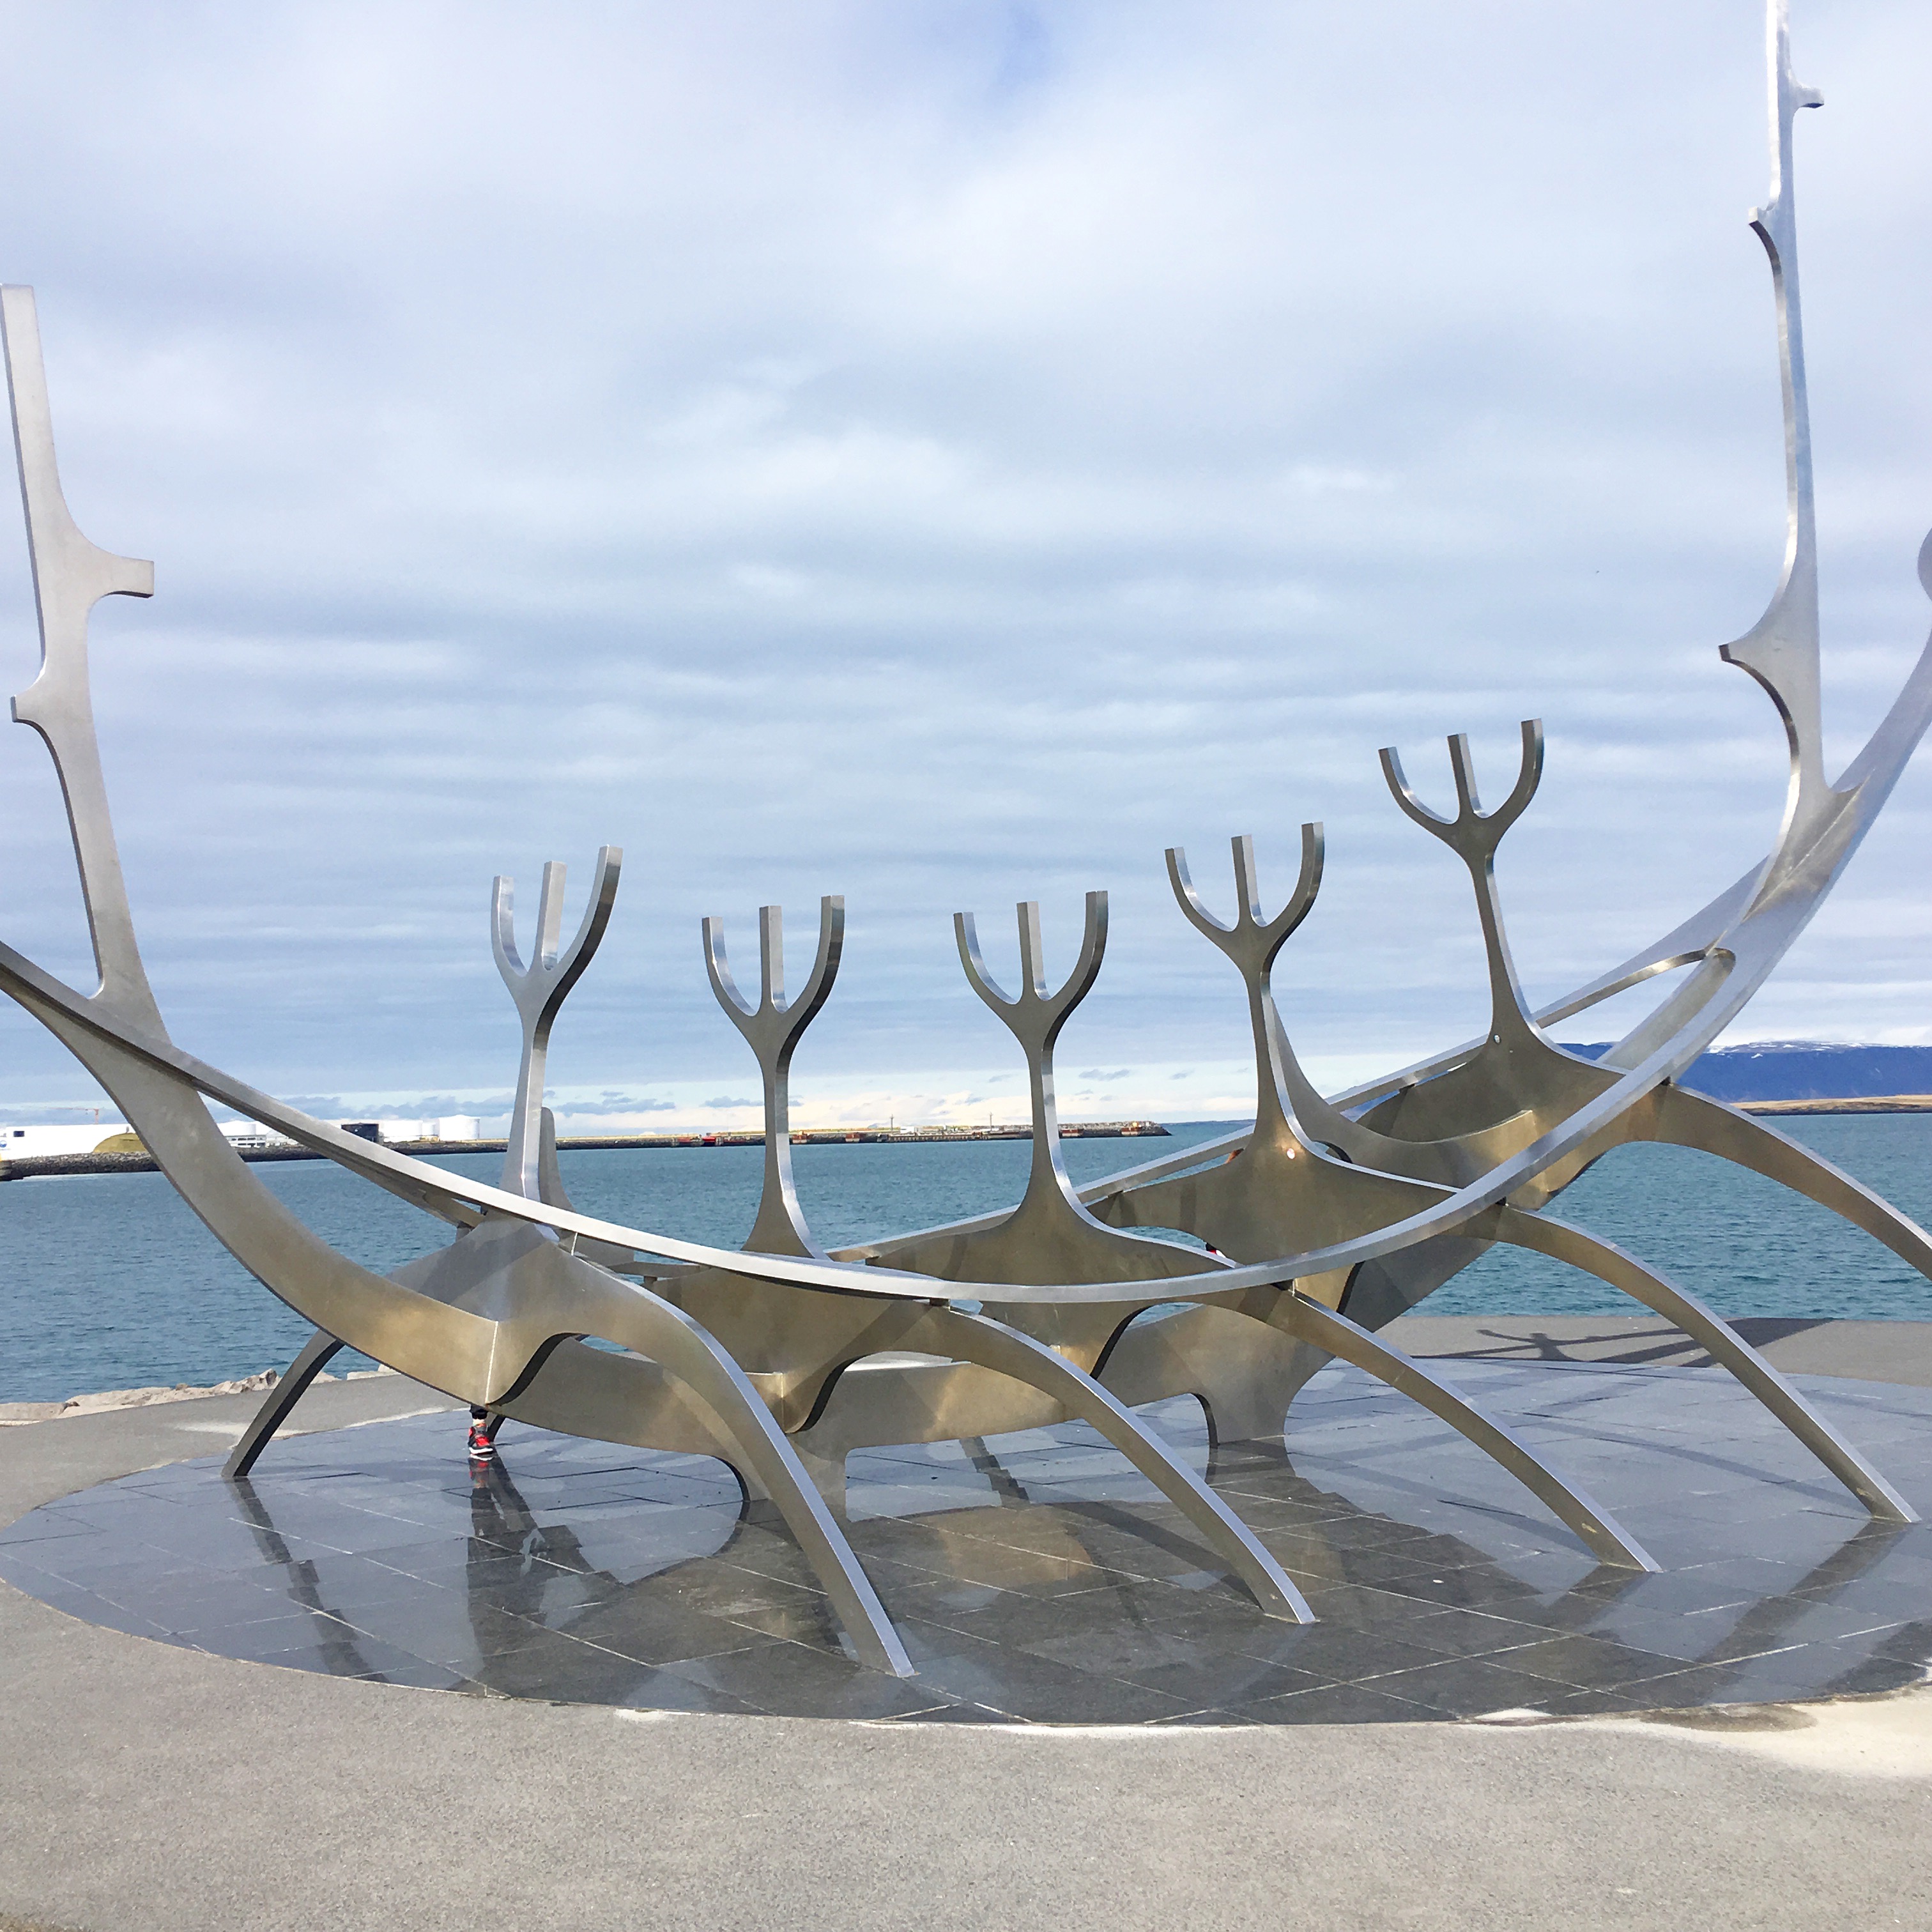 Sun Voyager Sculpture Iceland